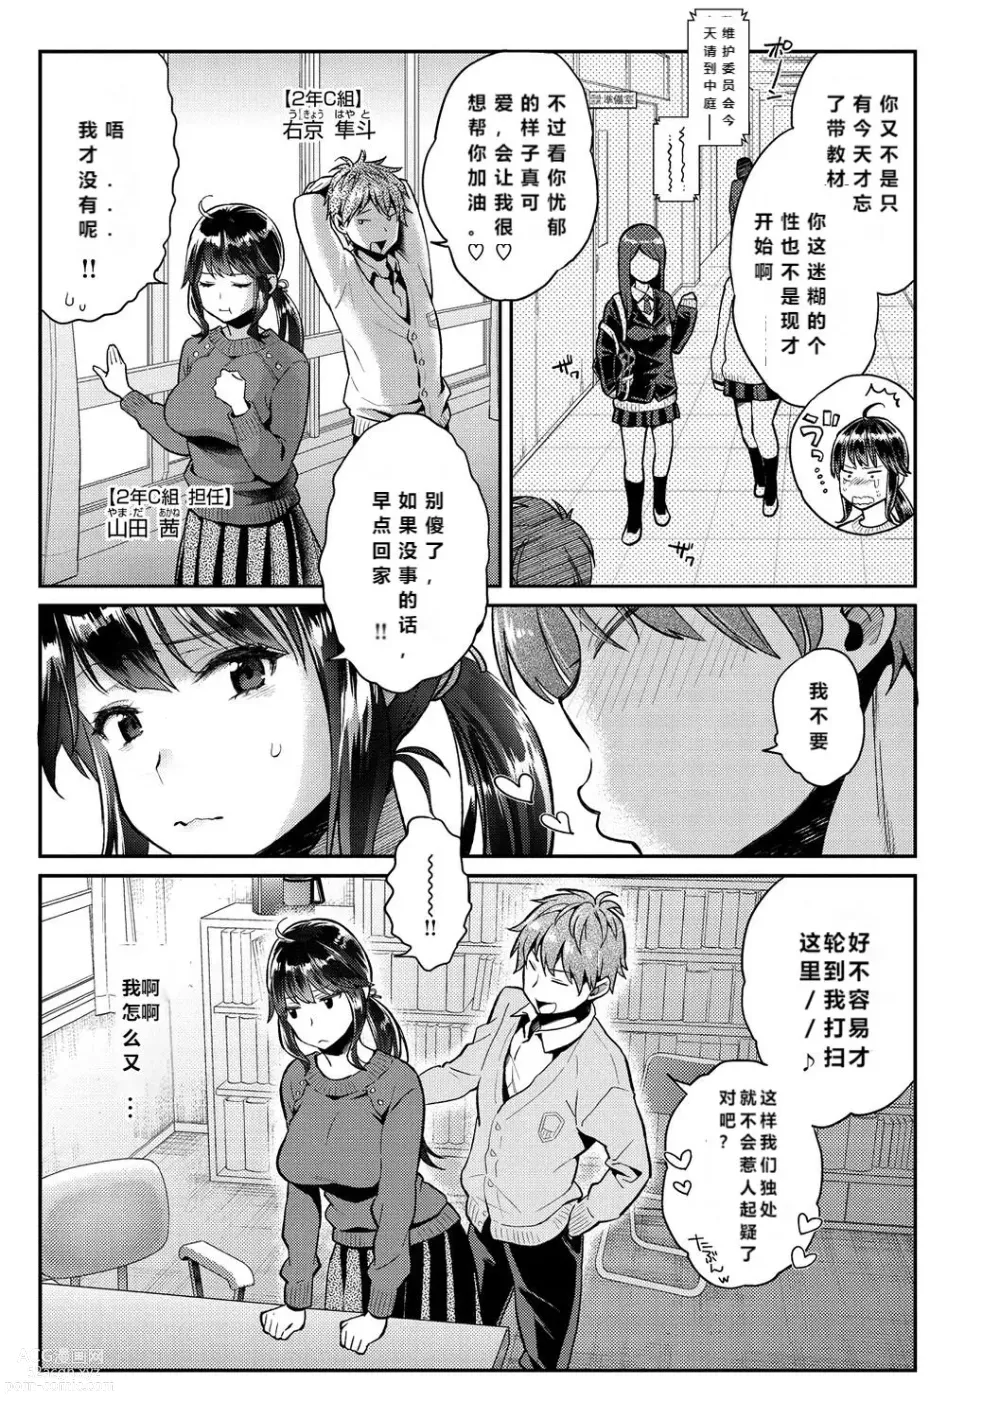 Page 7 of manga Ima... Shitai no